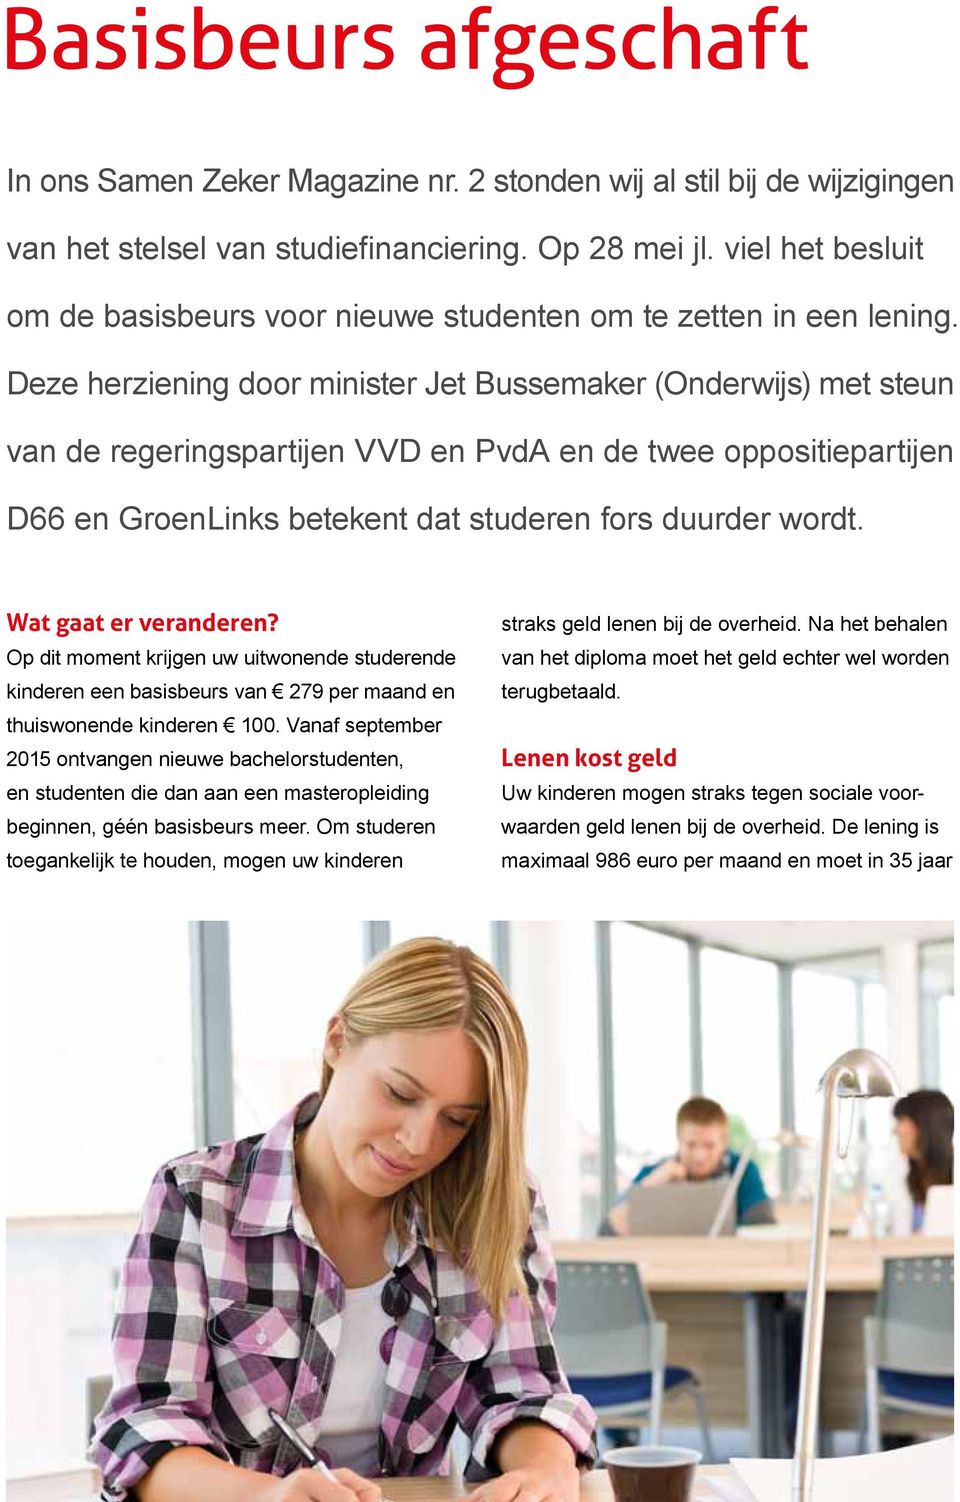 Deze herziening door minister Jet Bussemaker (Onderwijs) met steun van de regeringspartijen VVD en PvdA en de twee oppositiepartijen D66 en GroenLinks betekent dat studeren fors duurder wordt.